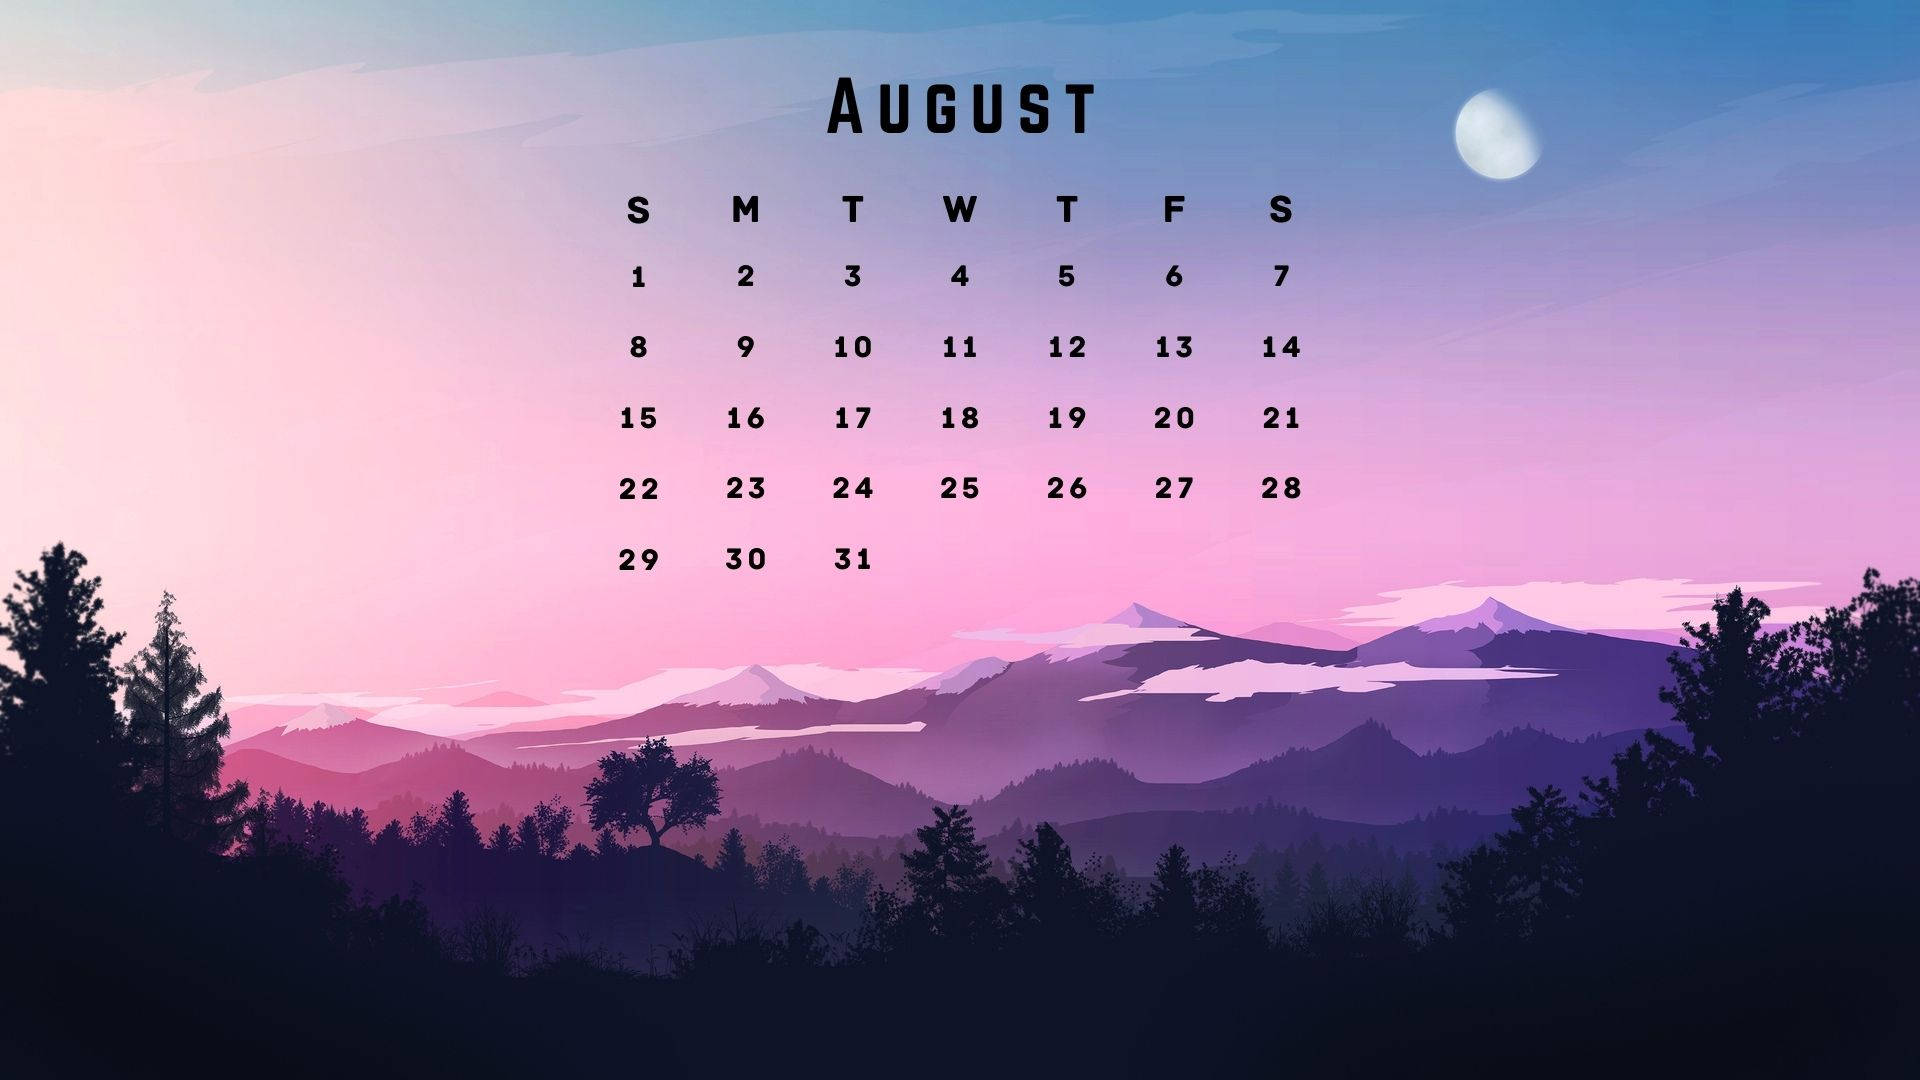 Mountain August 2021 Calendar